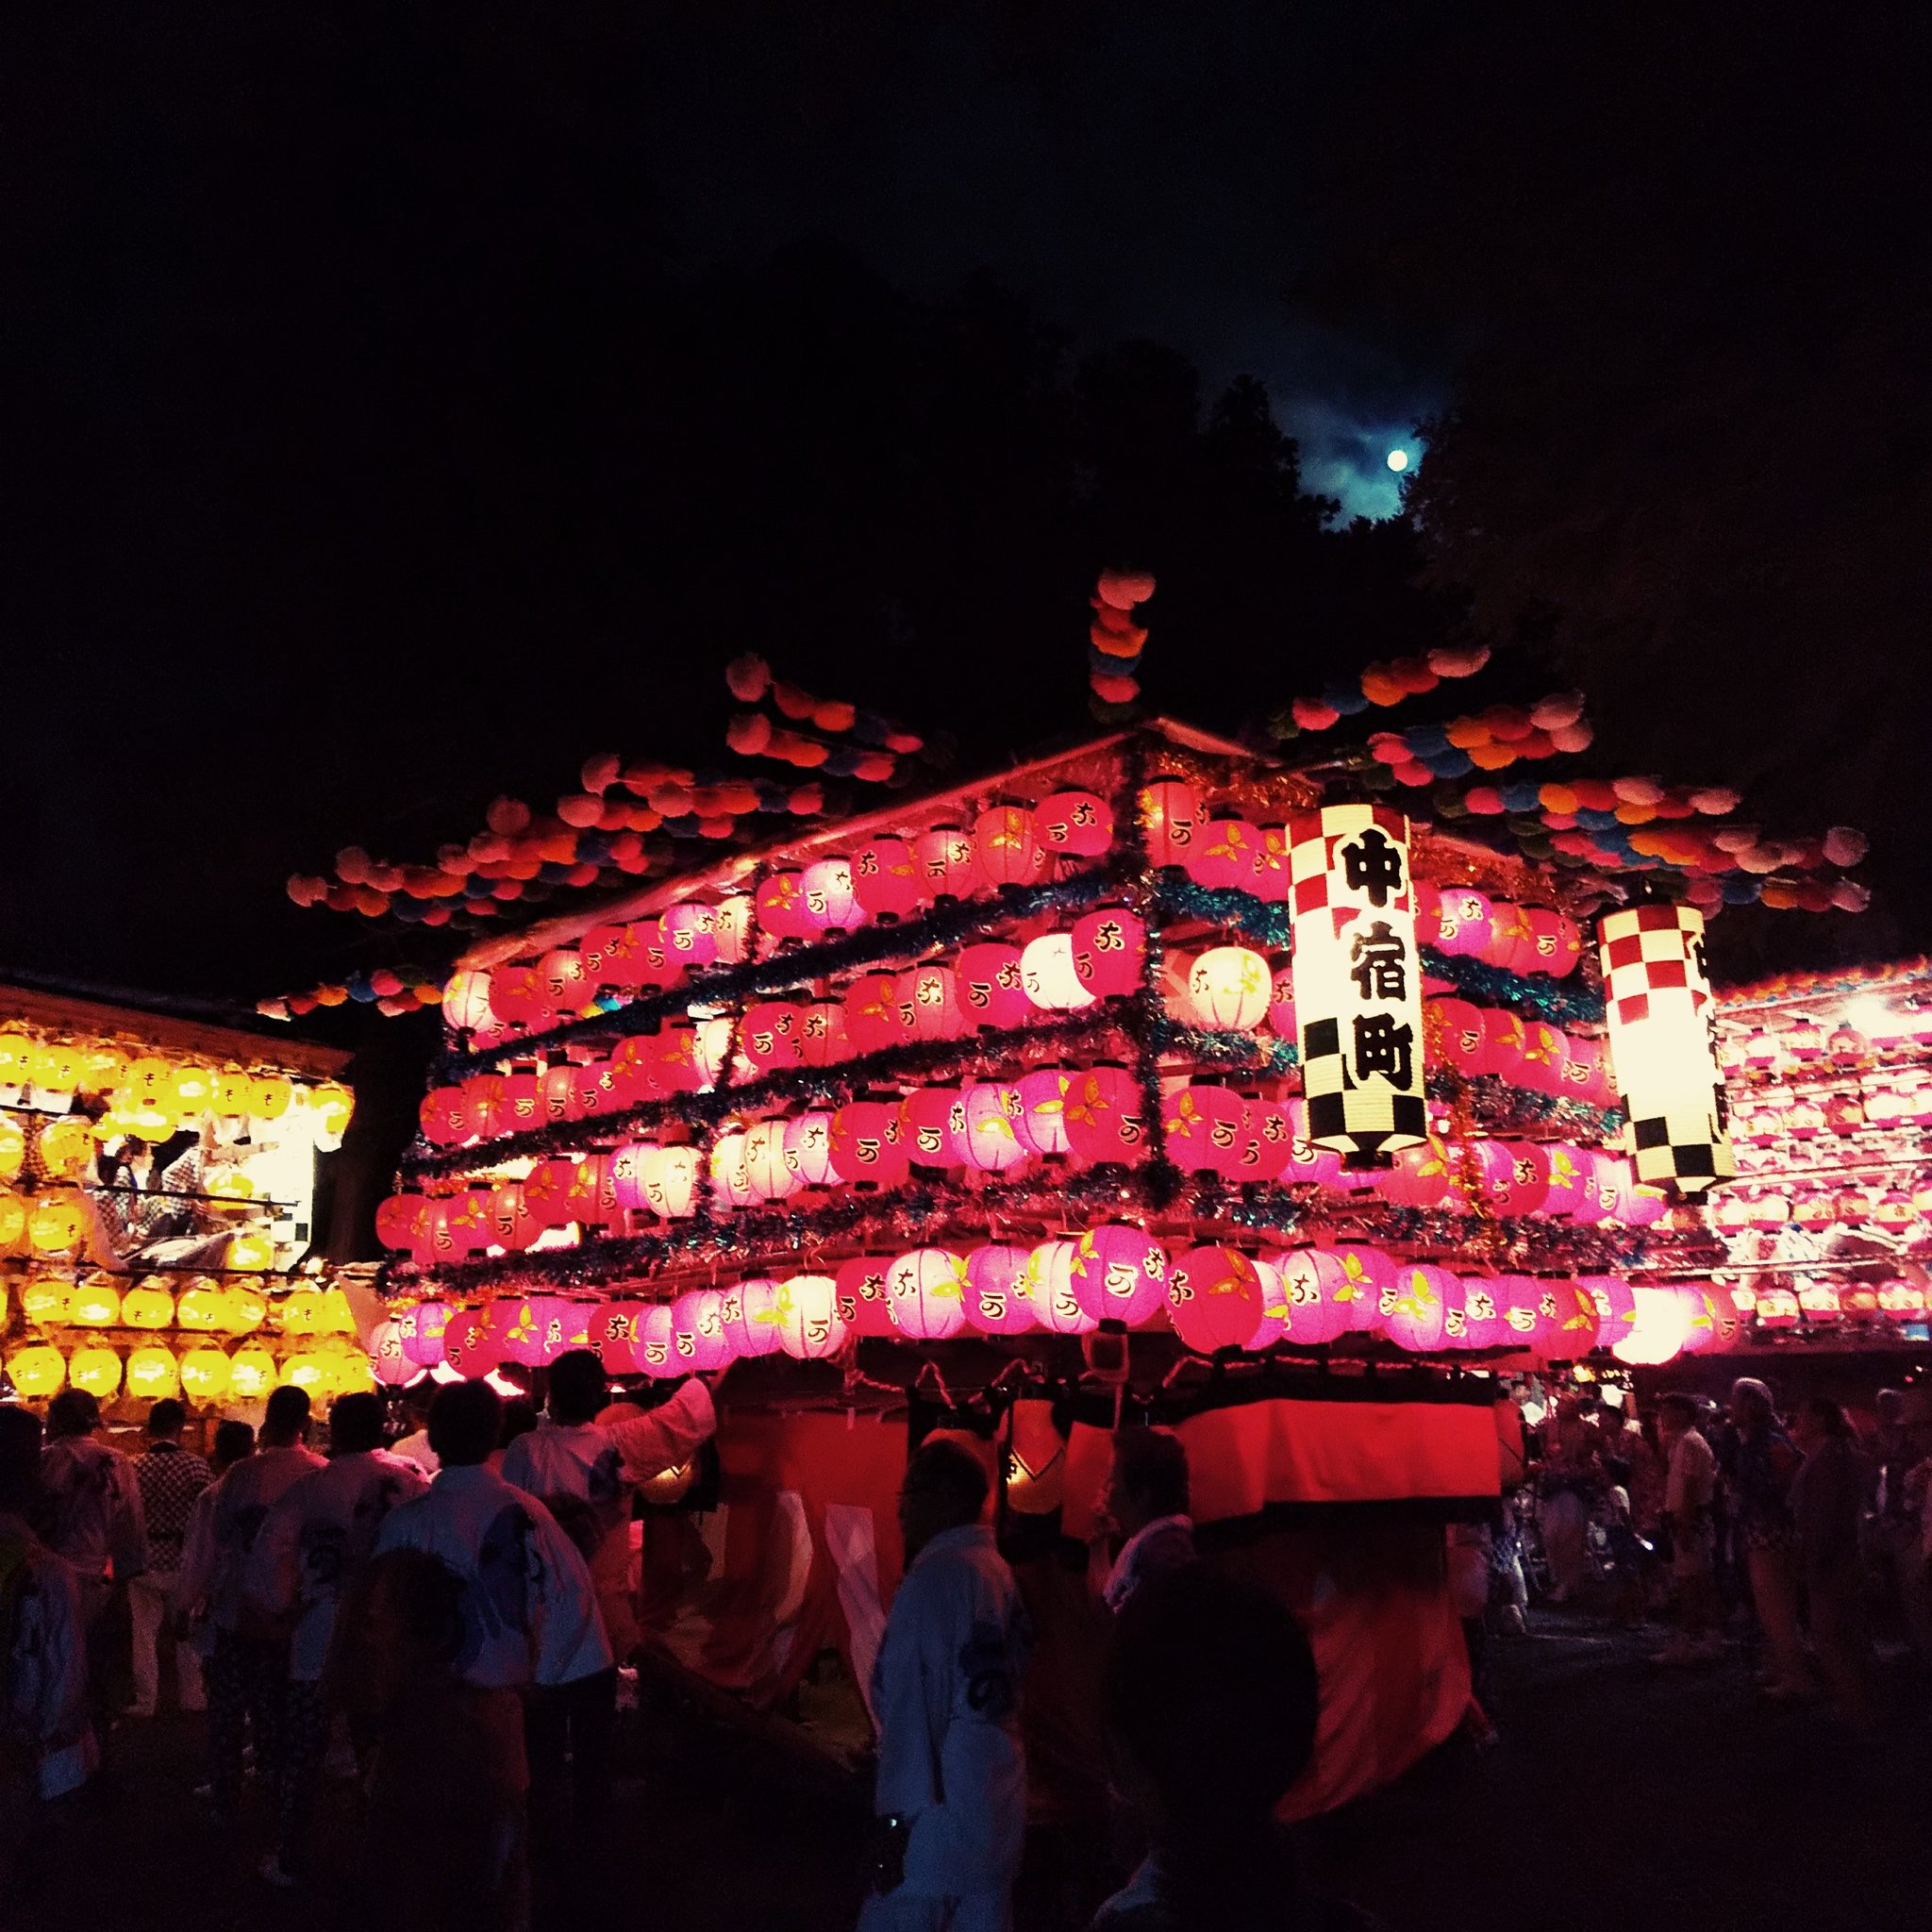 菅谷まつり(大助祭り) 2019 | 茨城県那珂市